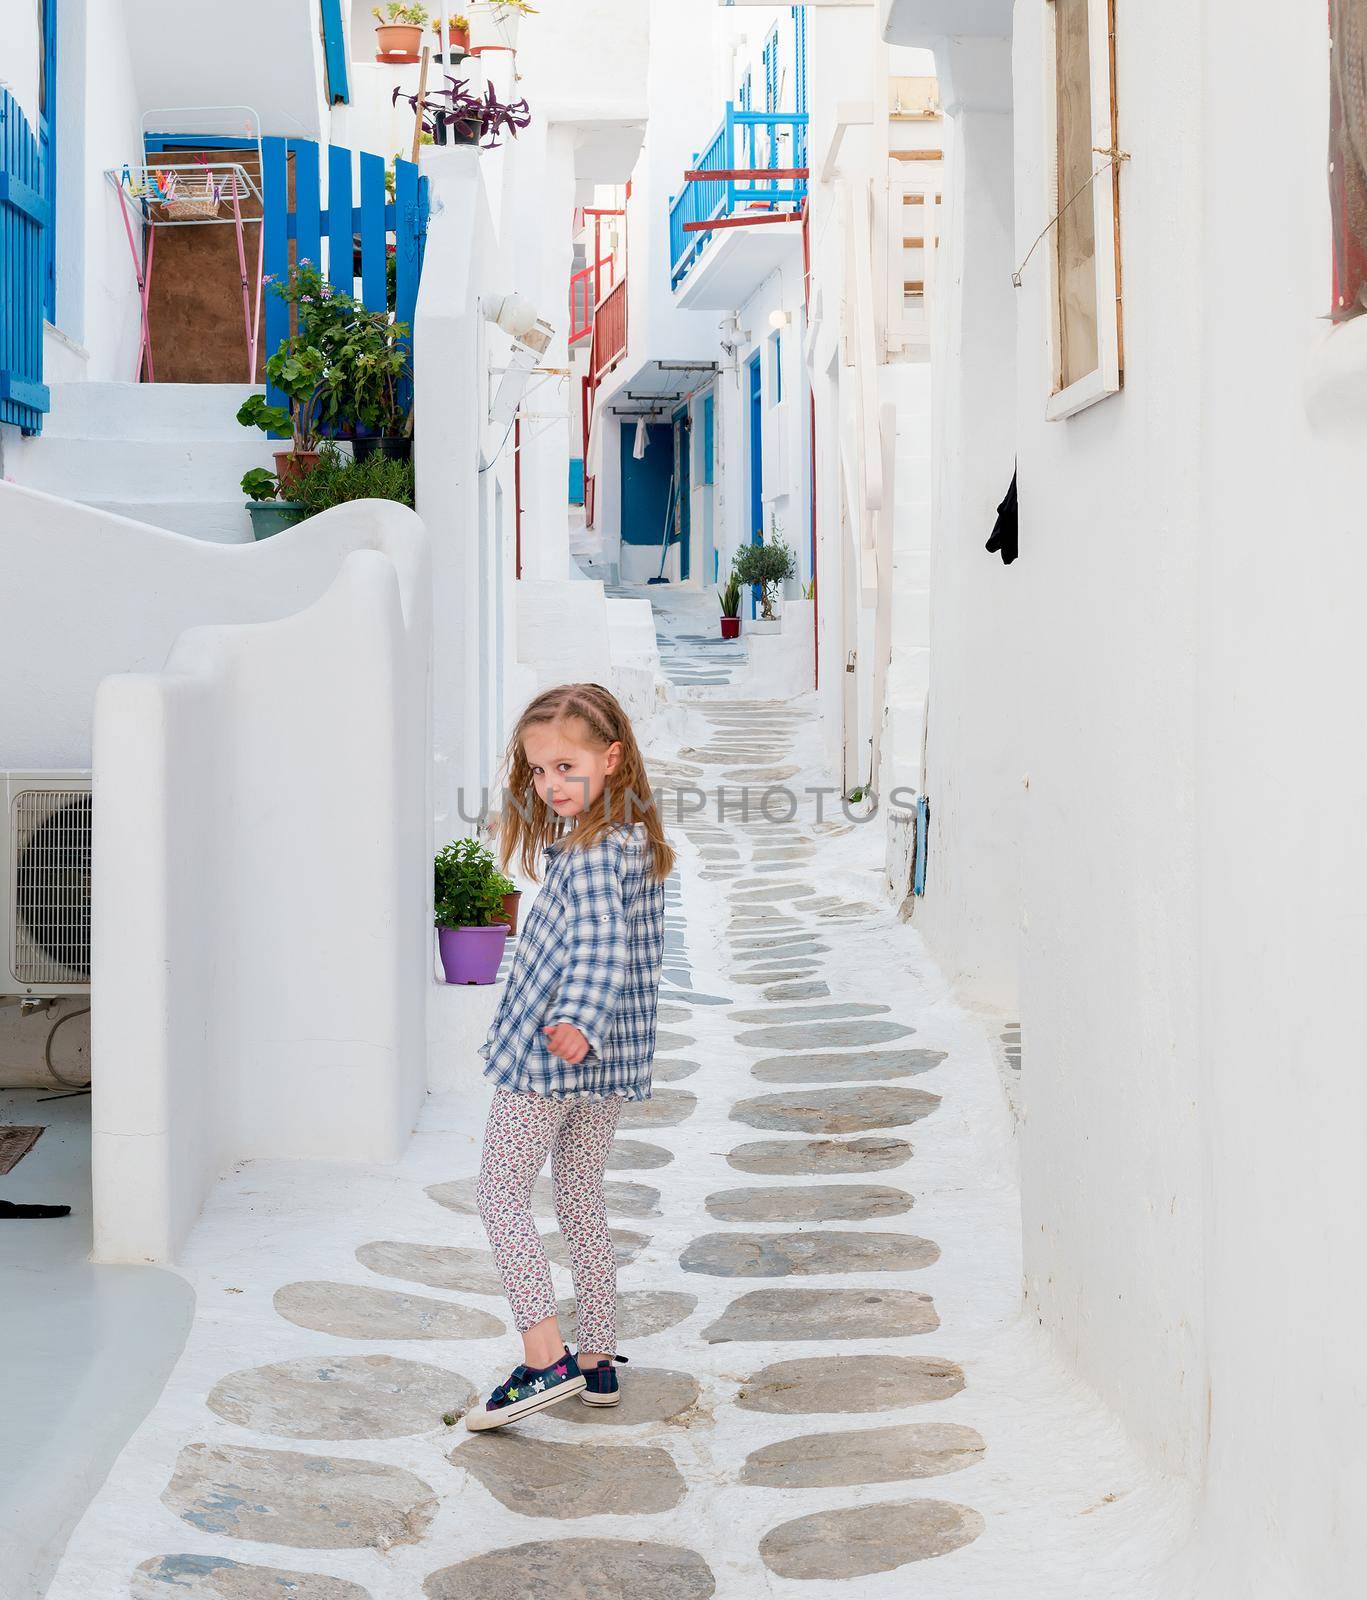 Little girl walking the narrow alley in Greece by tan4ikk1